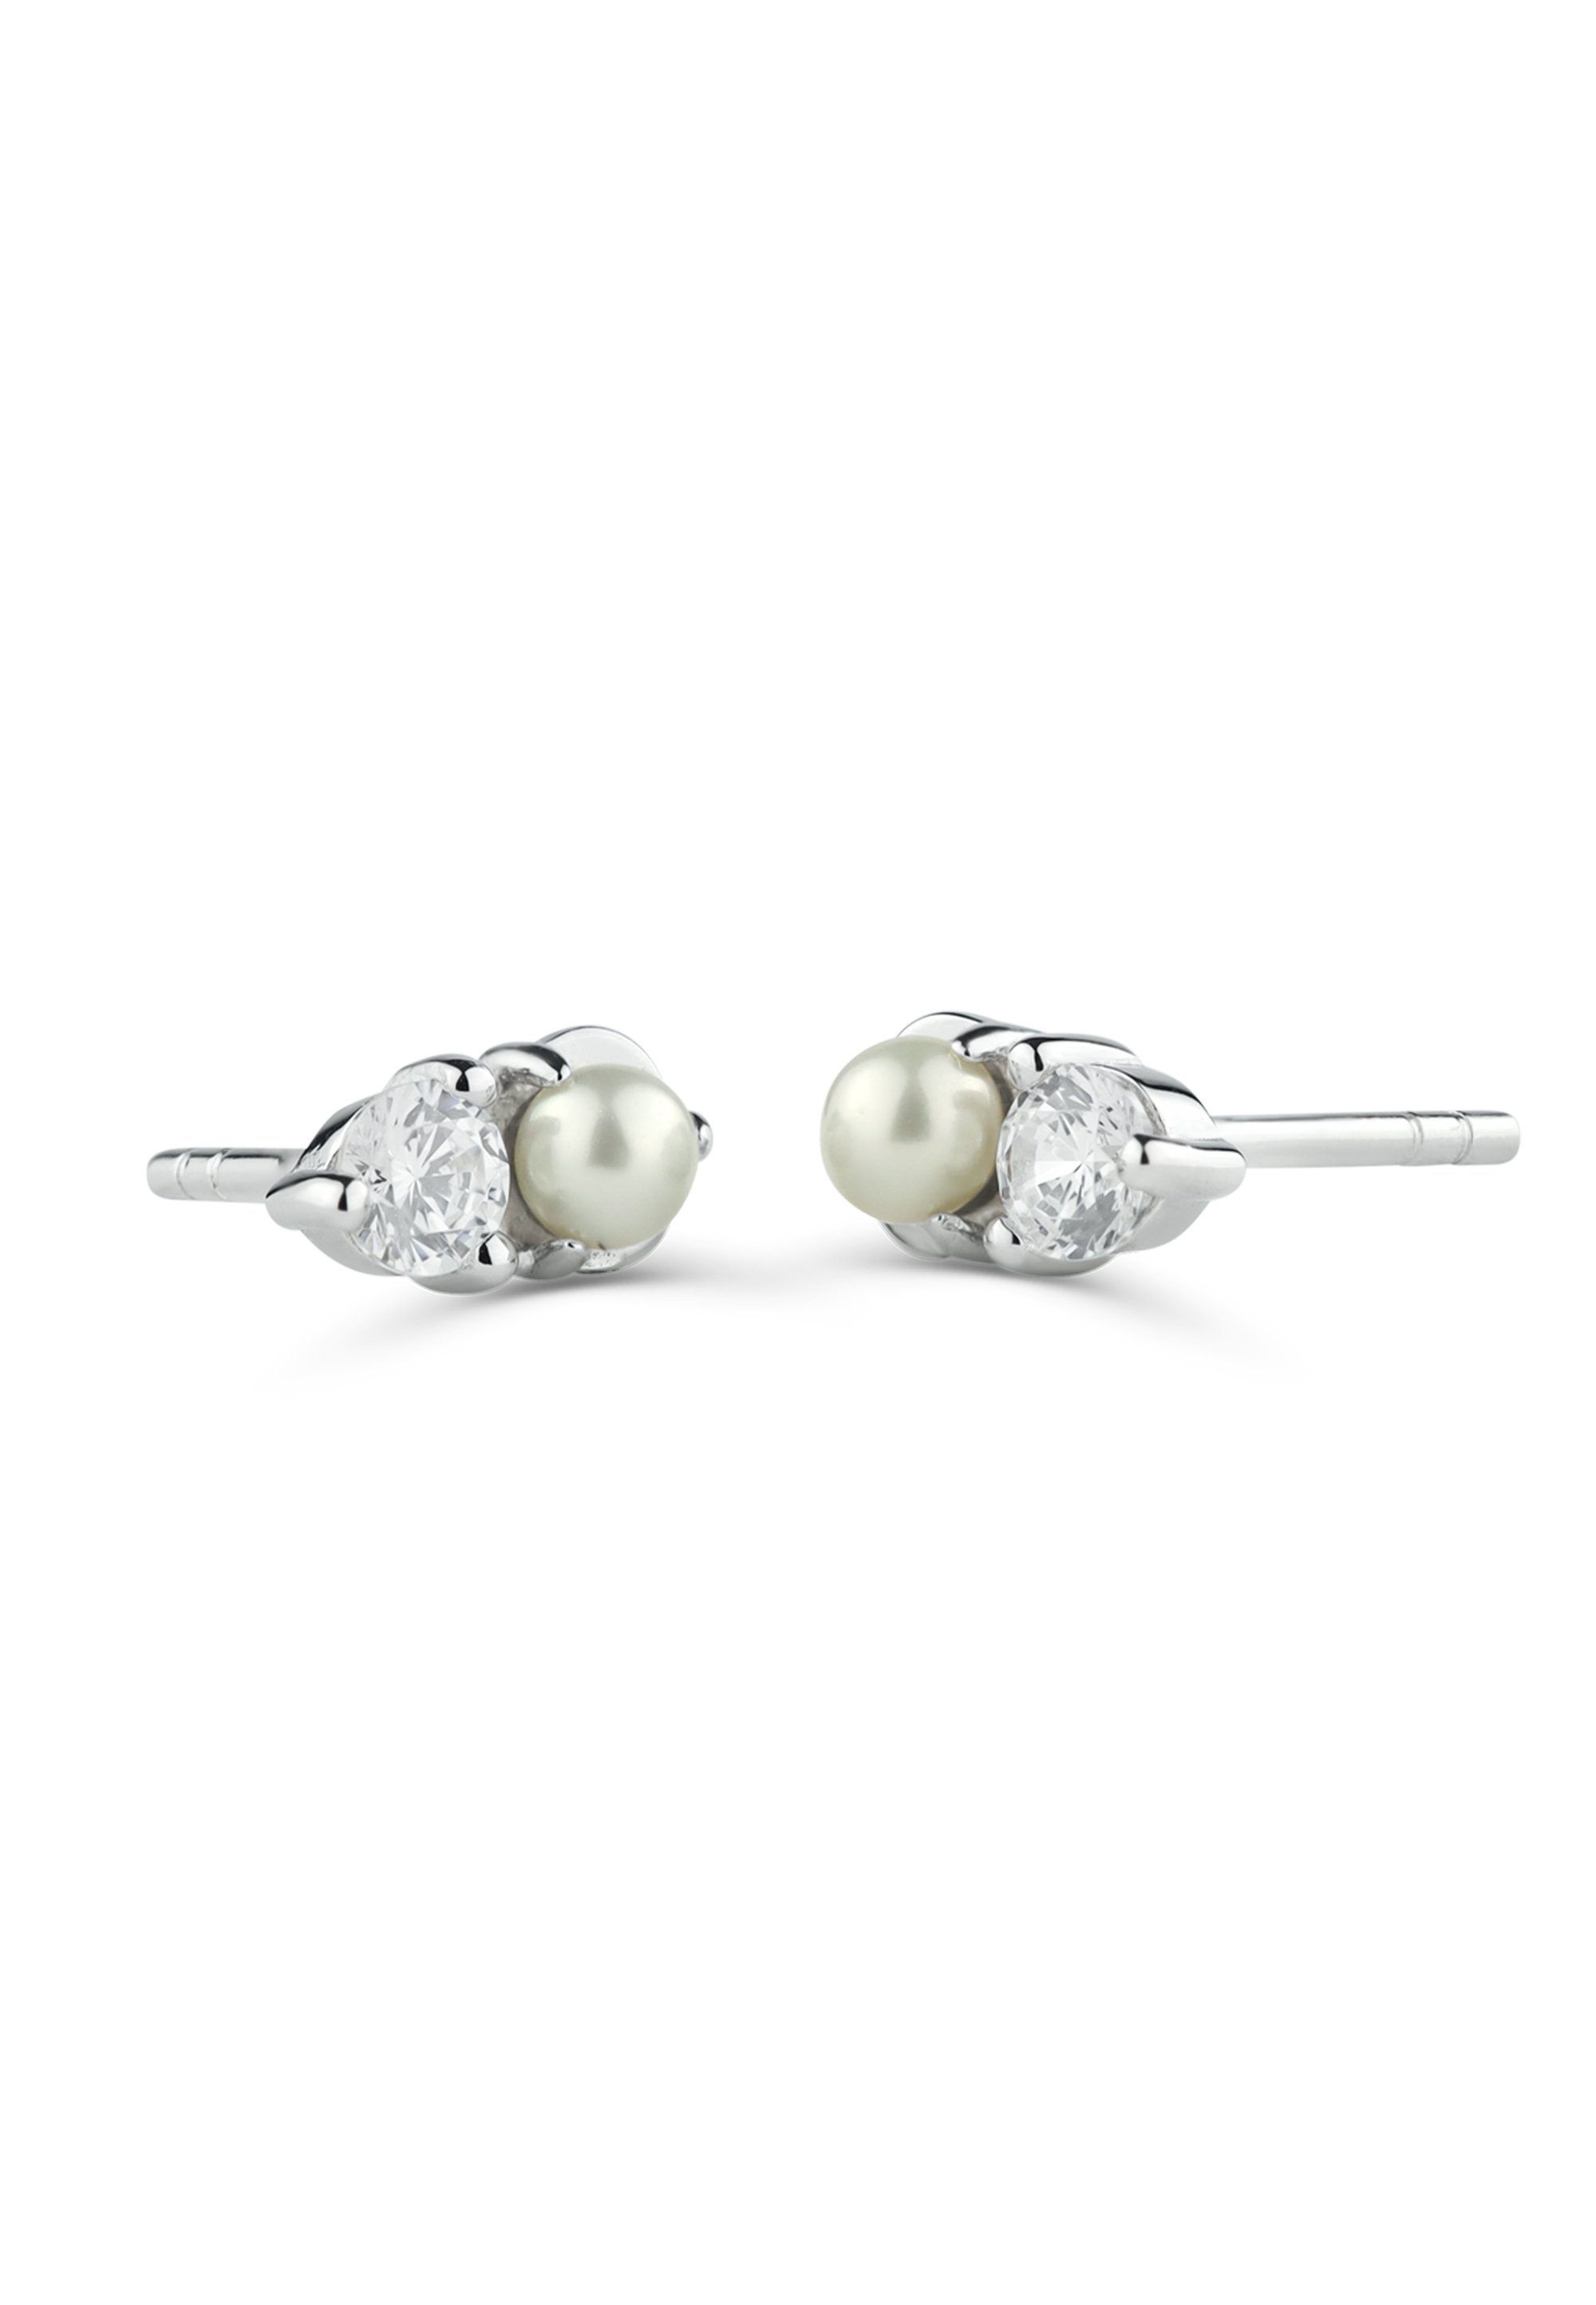 NANA KAY Paar Ohrstecker Petite Pearls, ST1884, mit Zirkonia-Stein und Perlen-Besatz